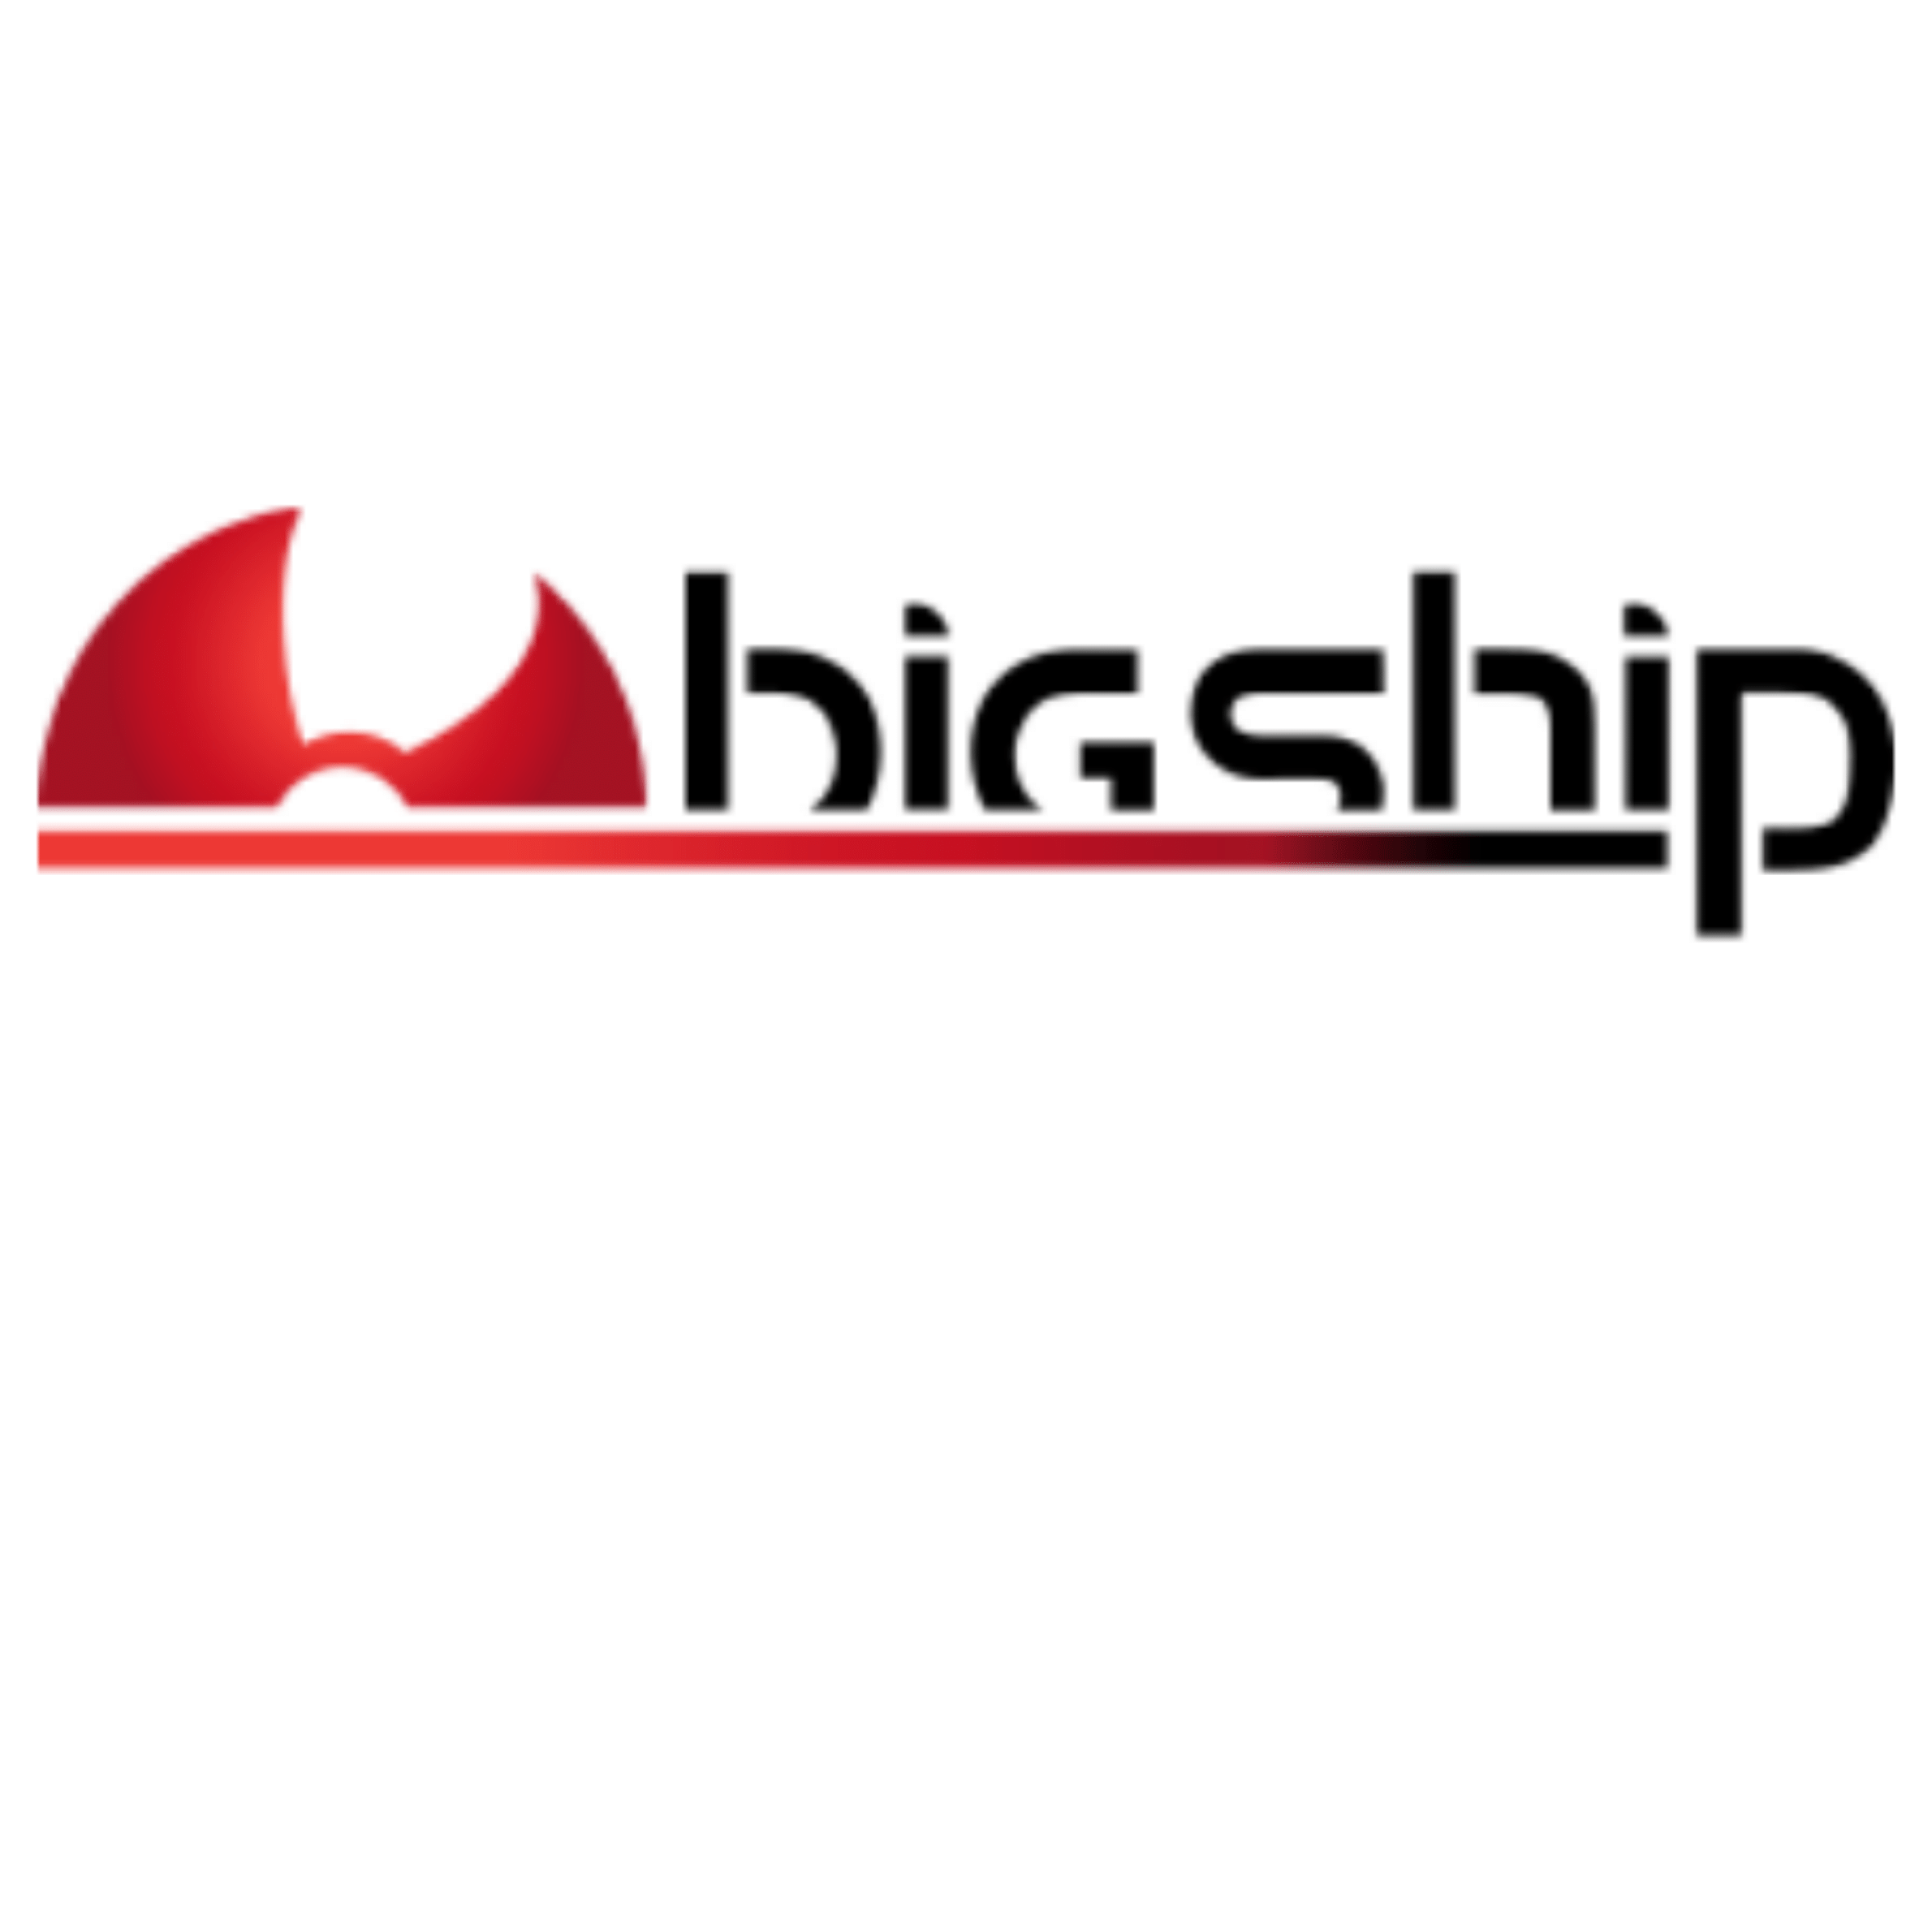 bigship logo